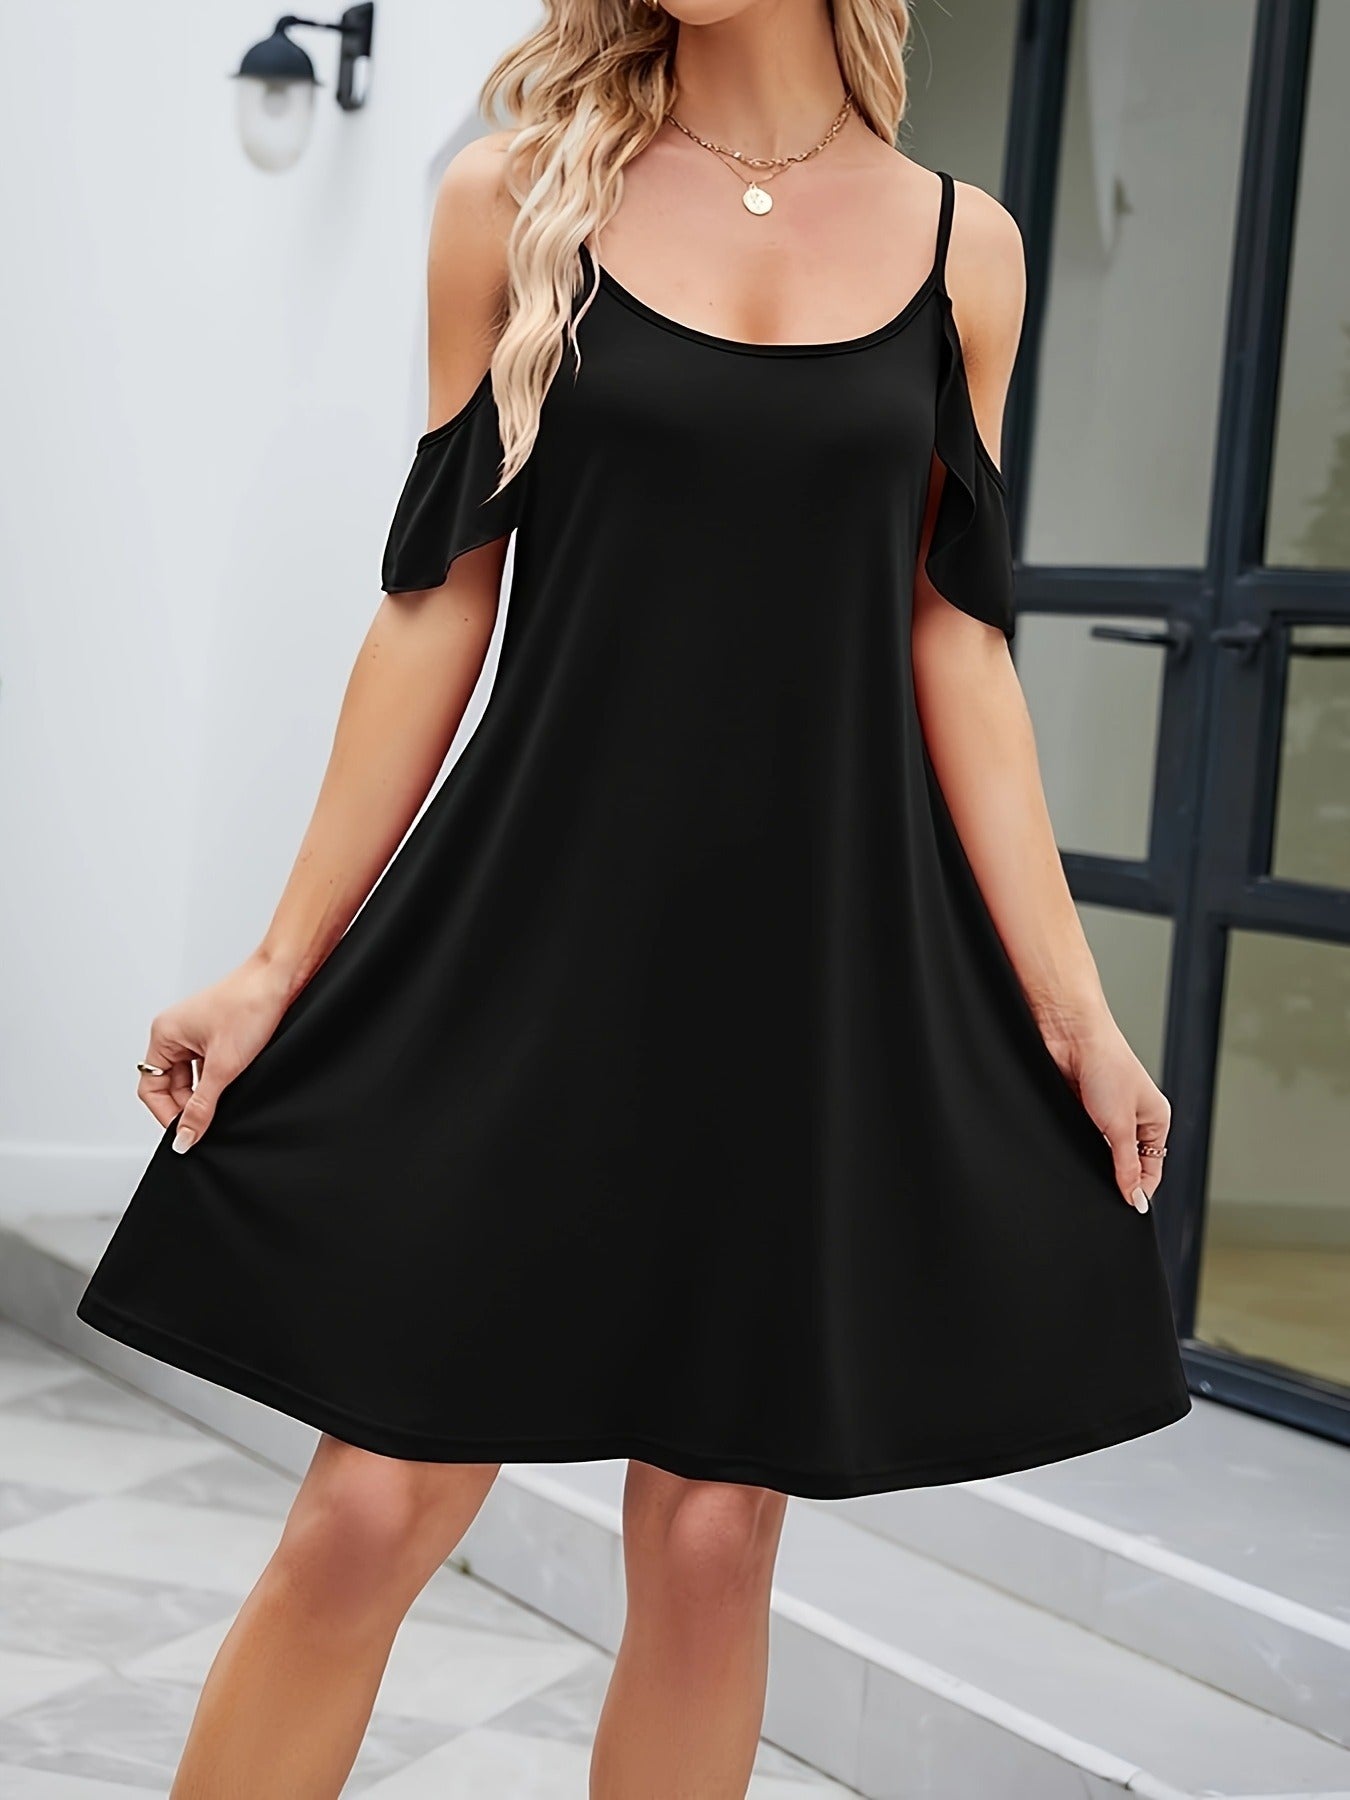 Cold Shoulder A-line Dress, Elegant Short Sleeve Dress